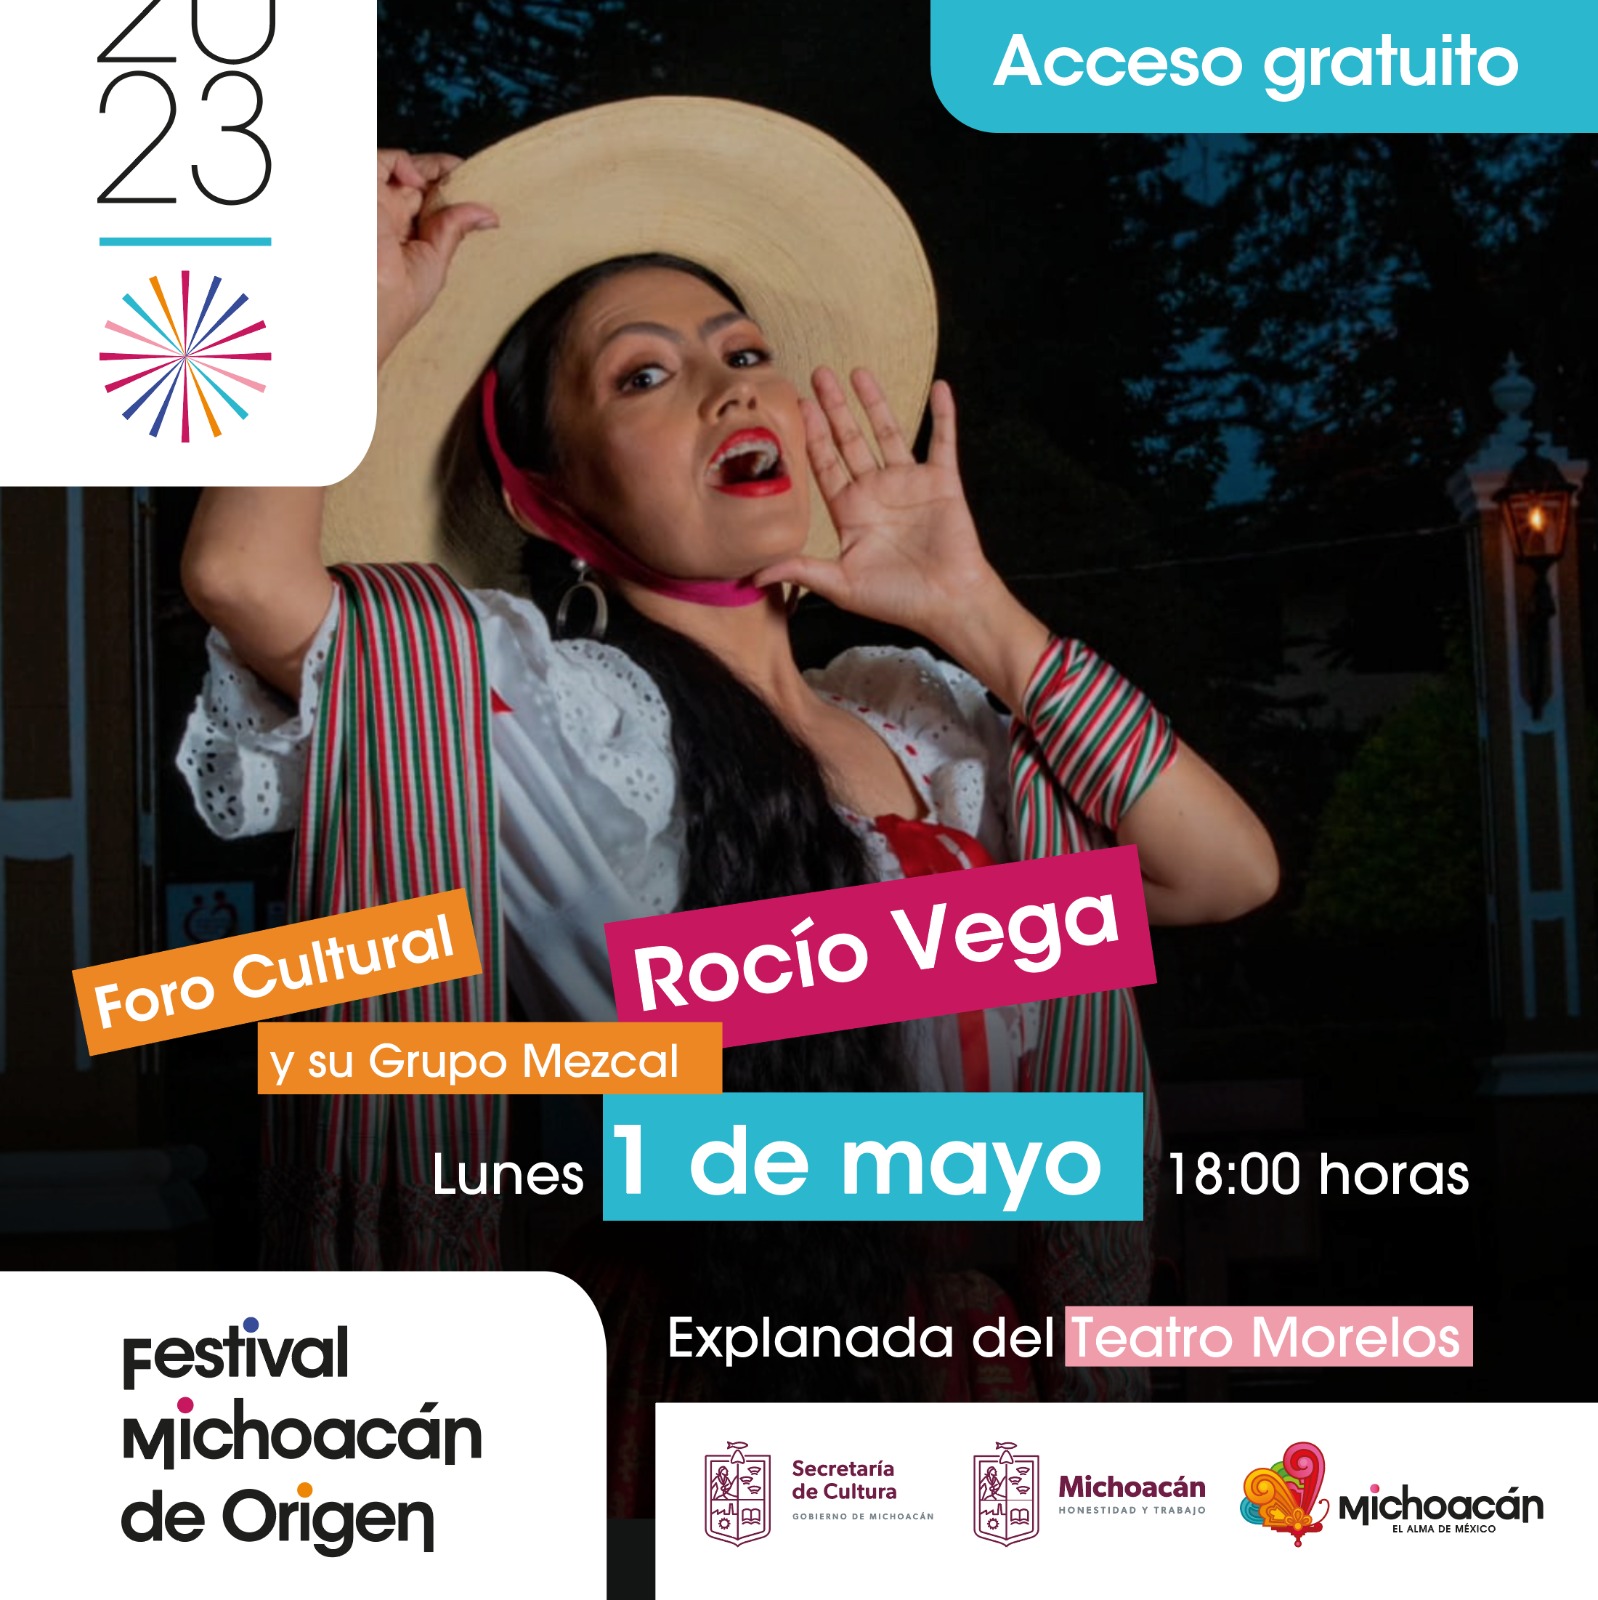 La música tradicional mexicana llega al Festival Michoacán de Origen con Rocío Vega y su Grupo Mezcal